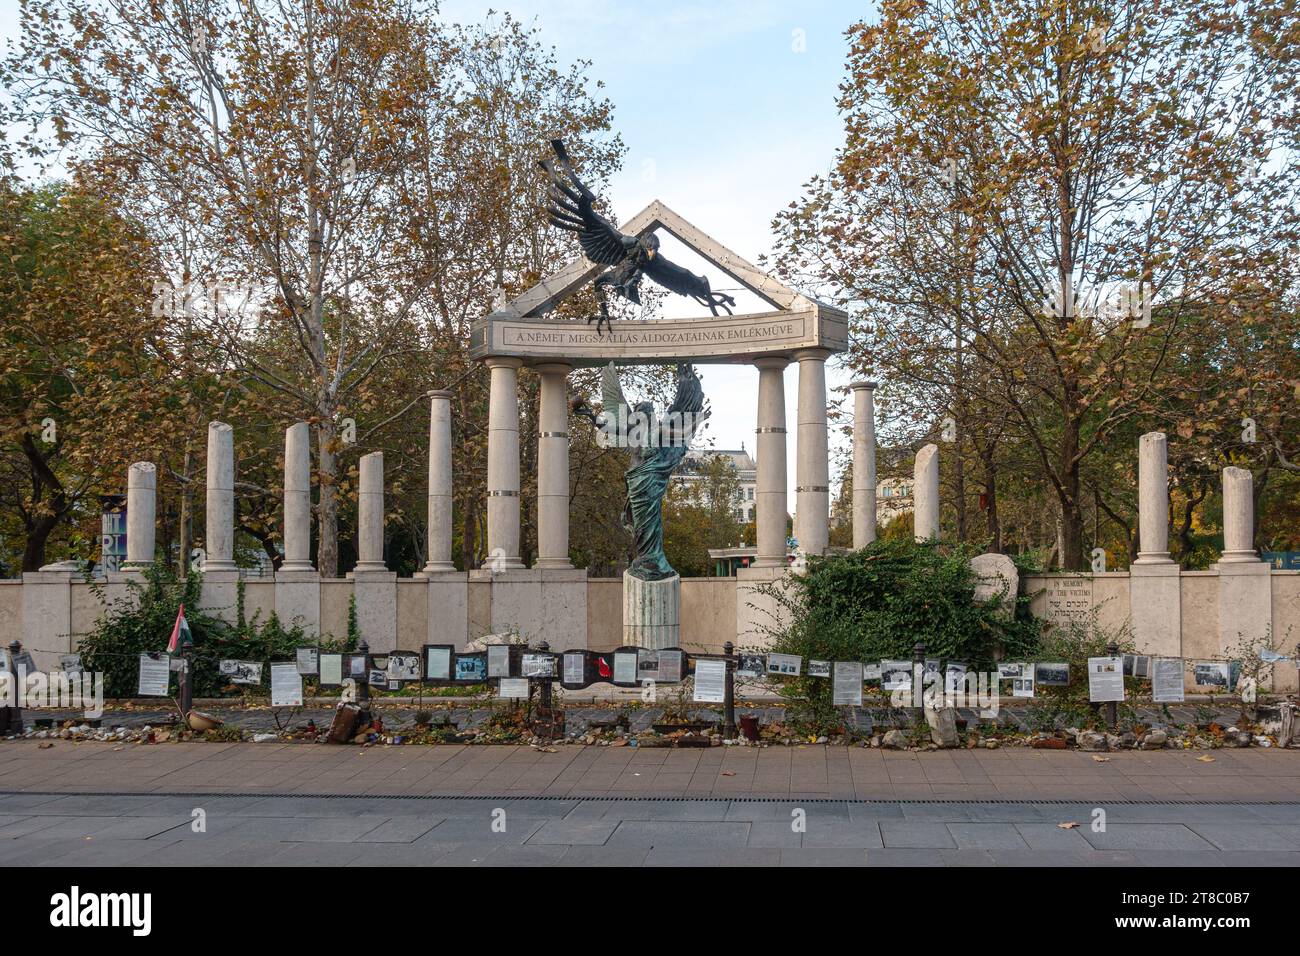 Le mémorial controversé de la seconde Guerre mondiale sur l'occupation allemande à Budapest, en Hongrie, avec une fontaine devant elle Banque D'Images